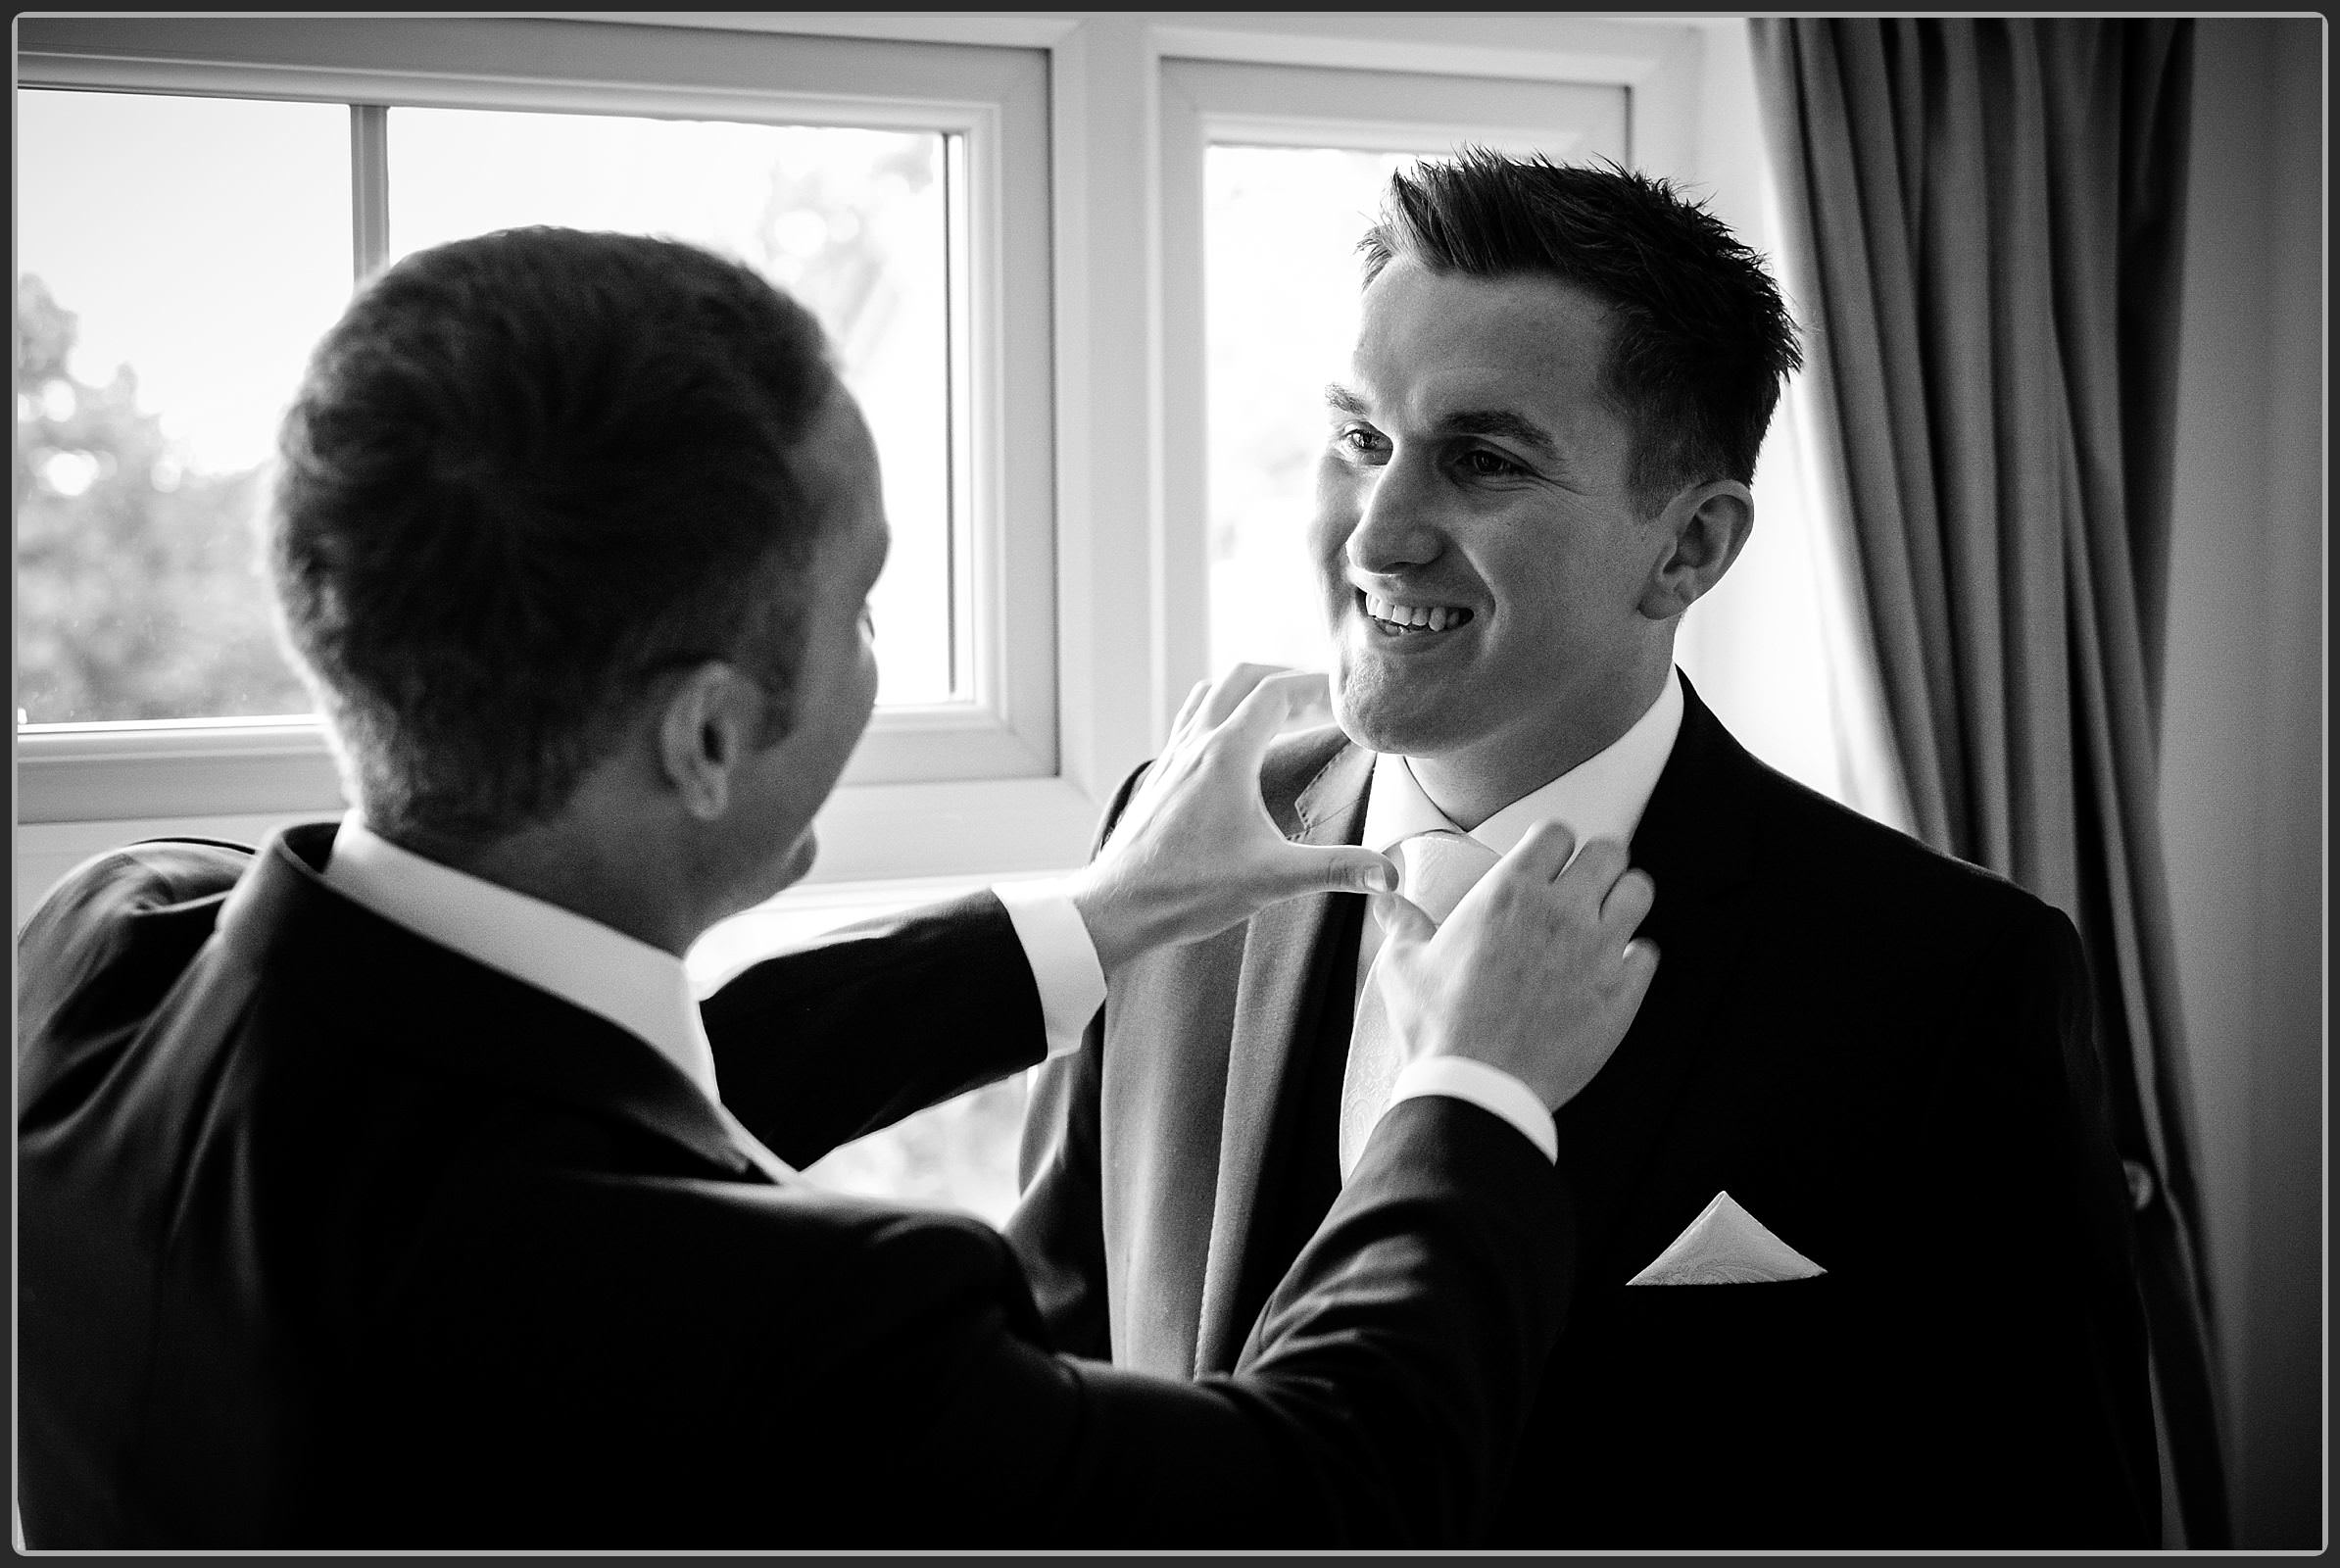 Best man helping the groom